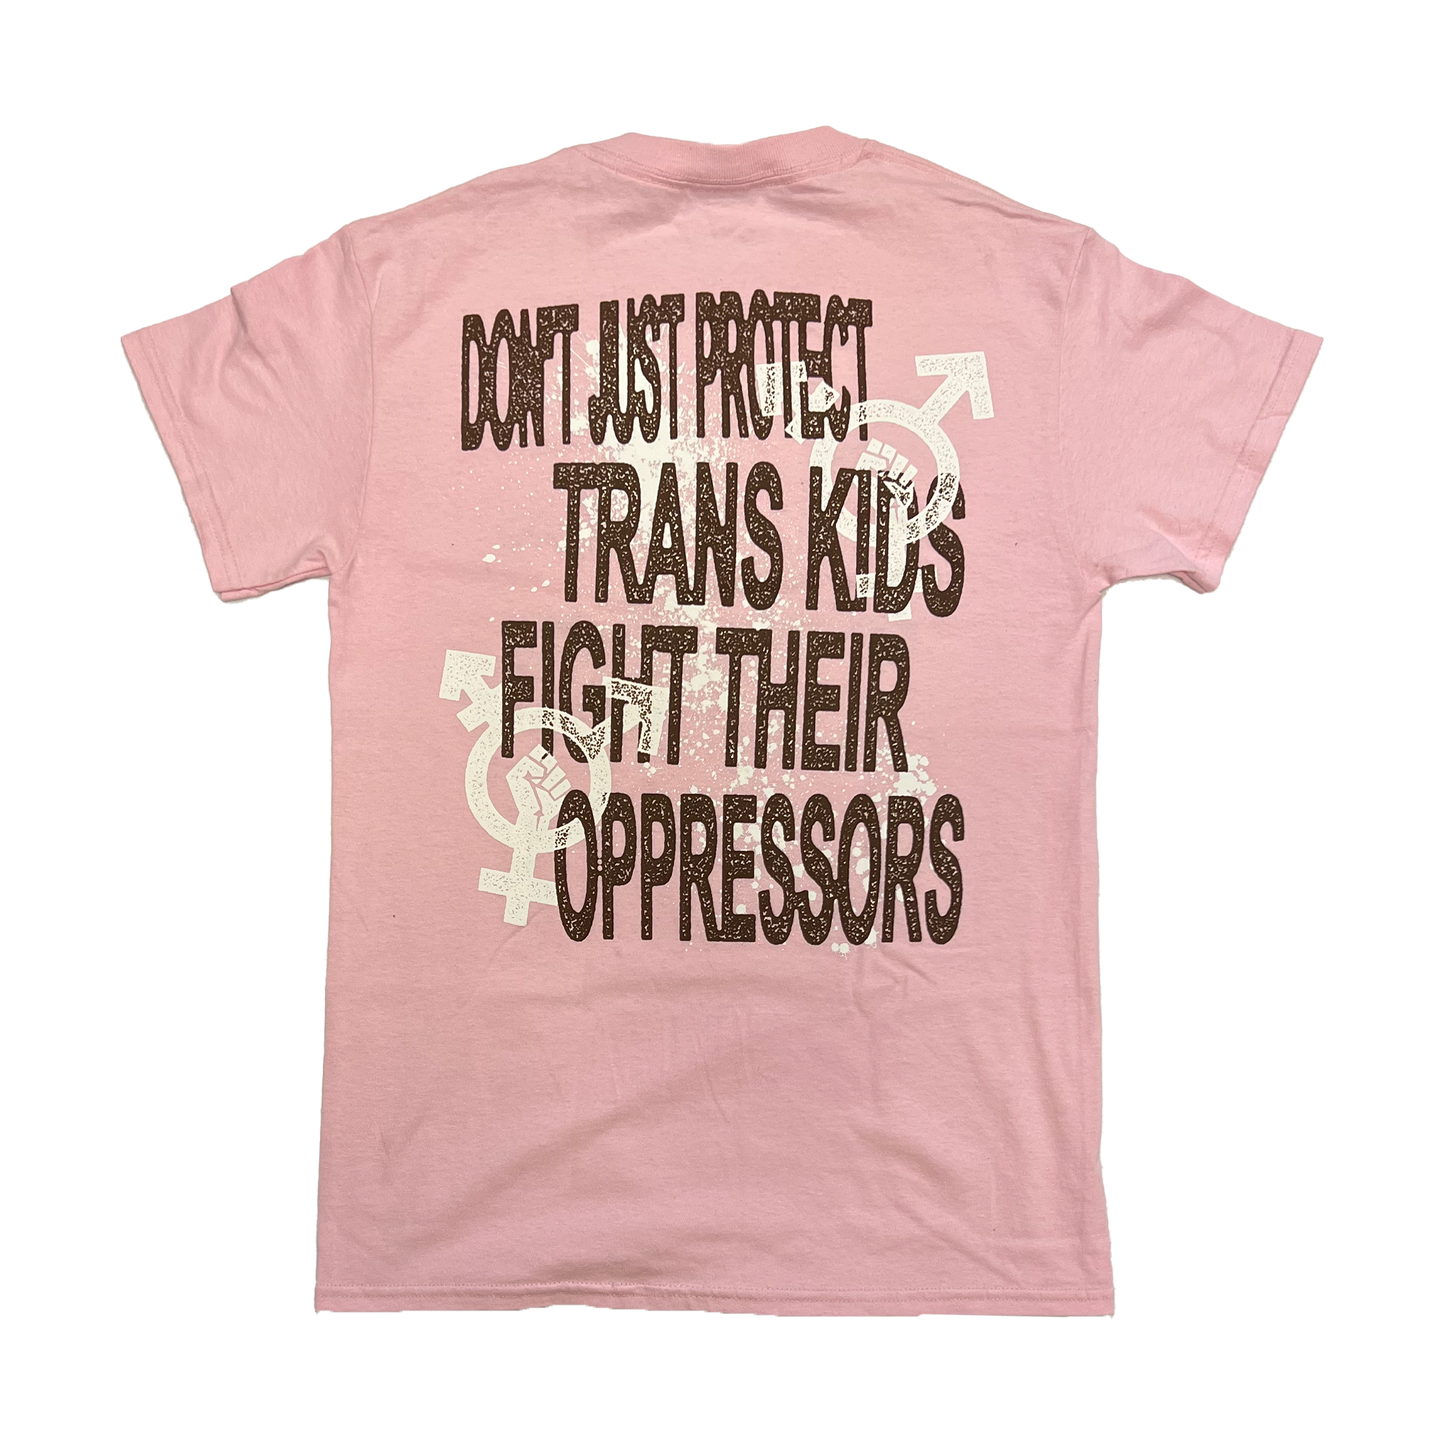 Fight Their Oppressors Shirt